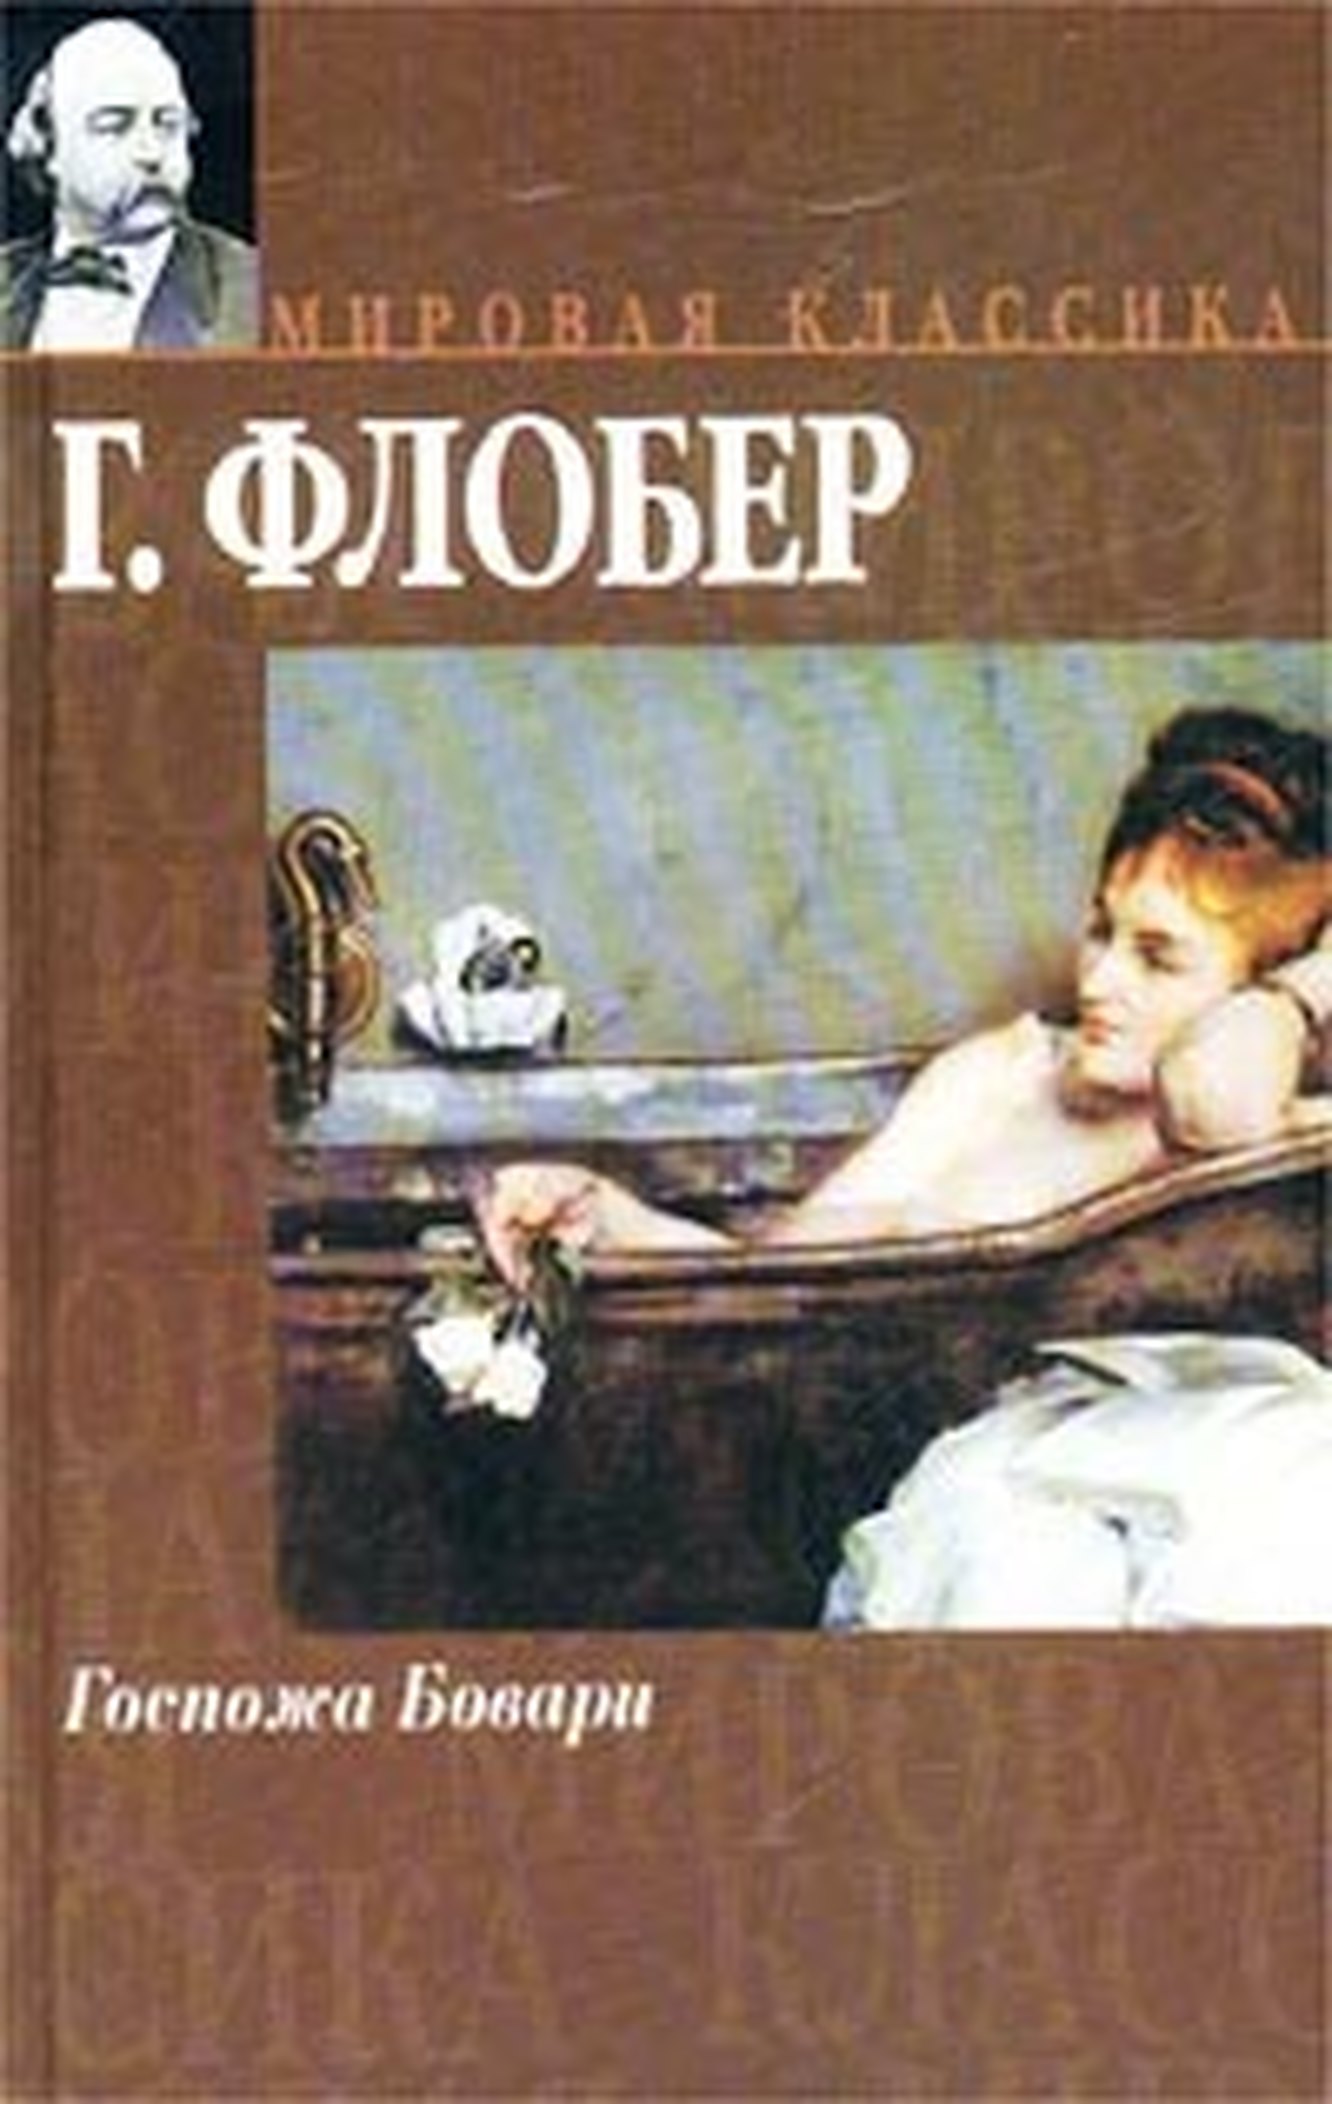 Художественная эротика в русской литературе